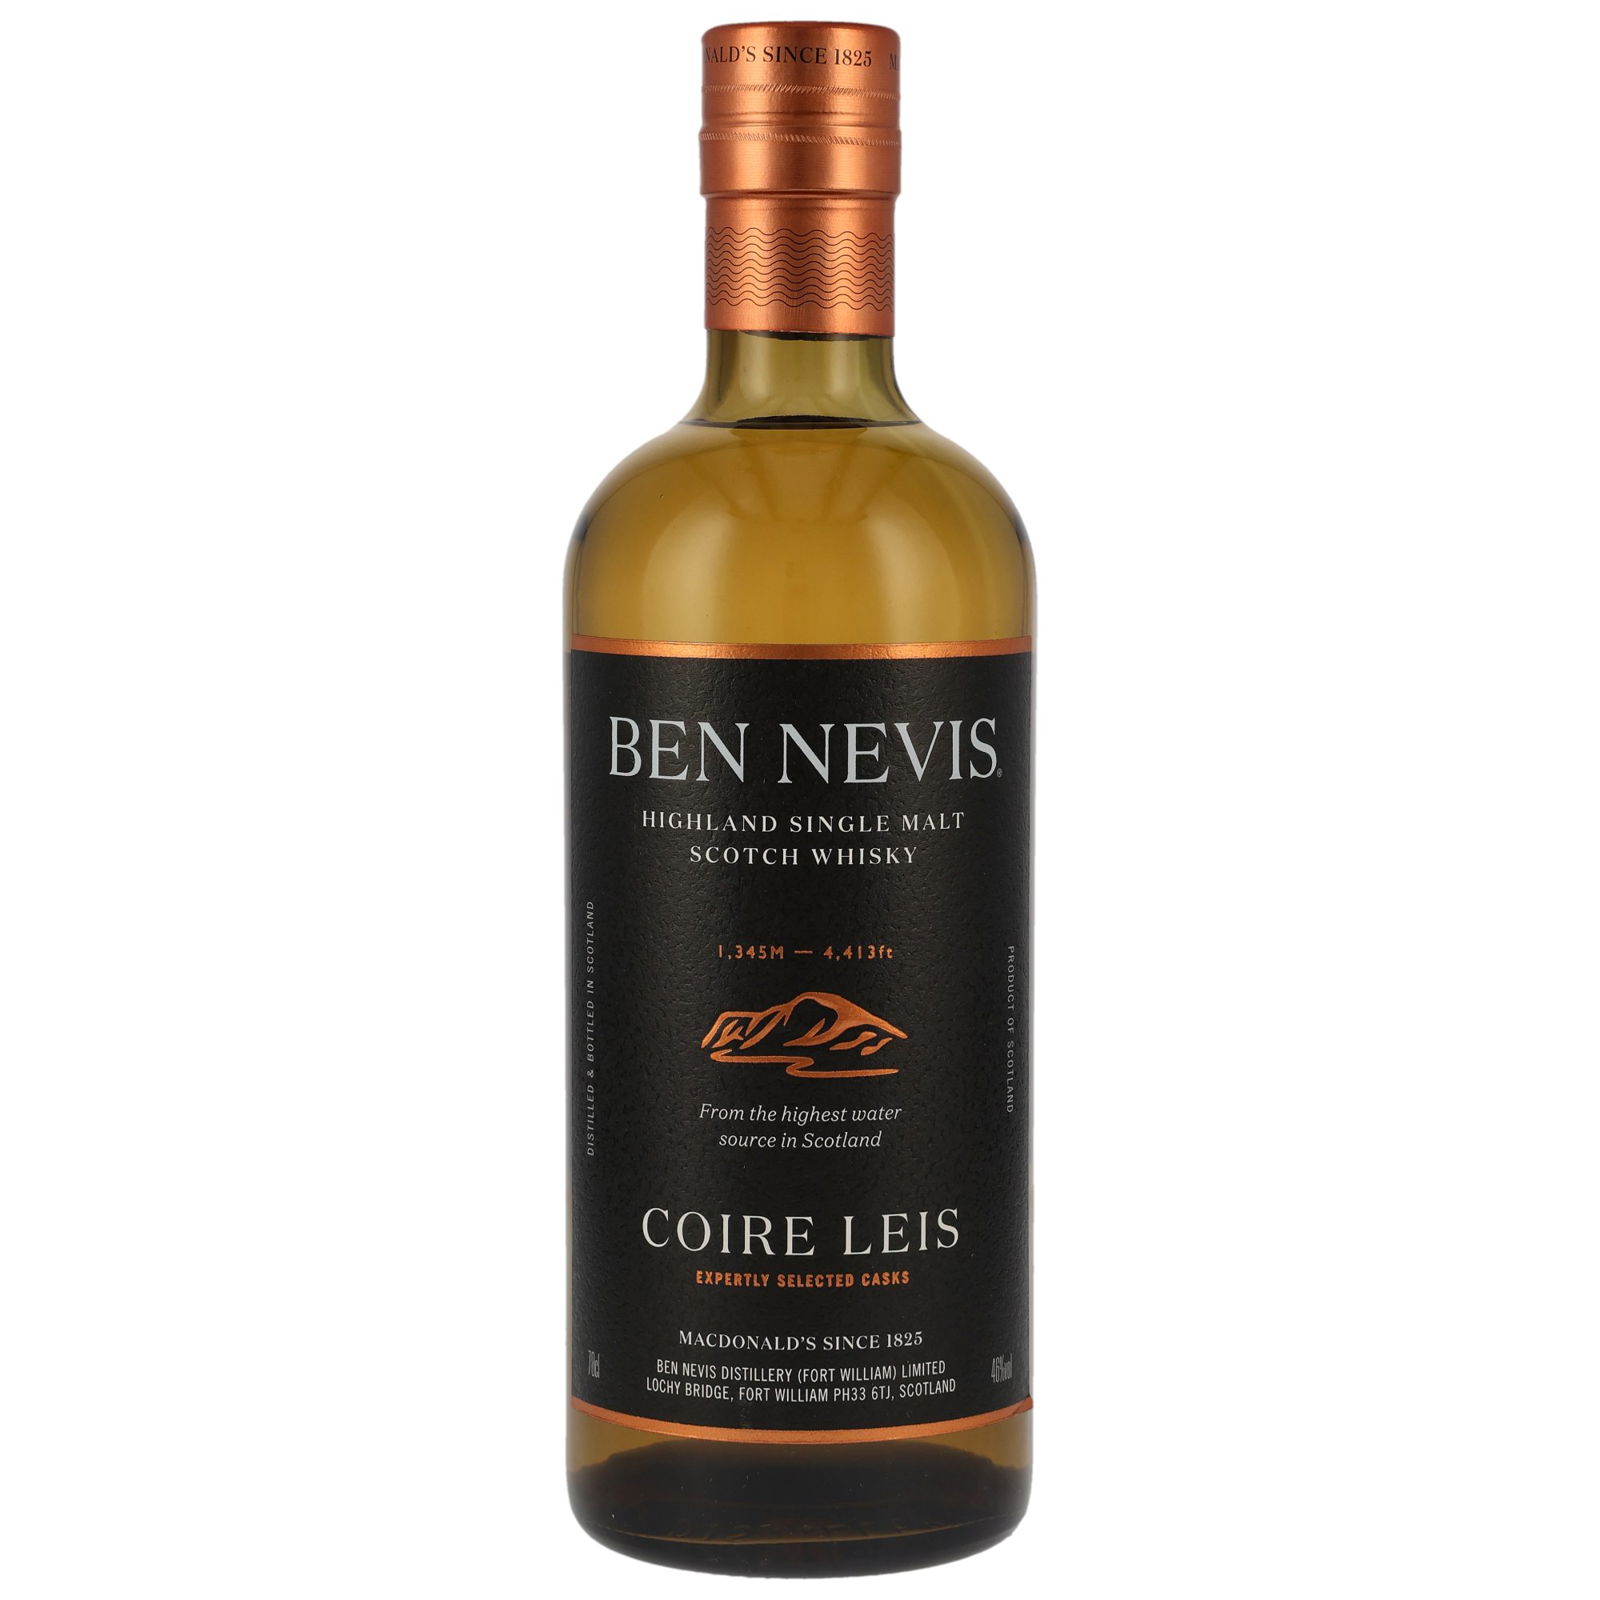 Ben Nevis Coire Leis ohne Geschenkverpackung